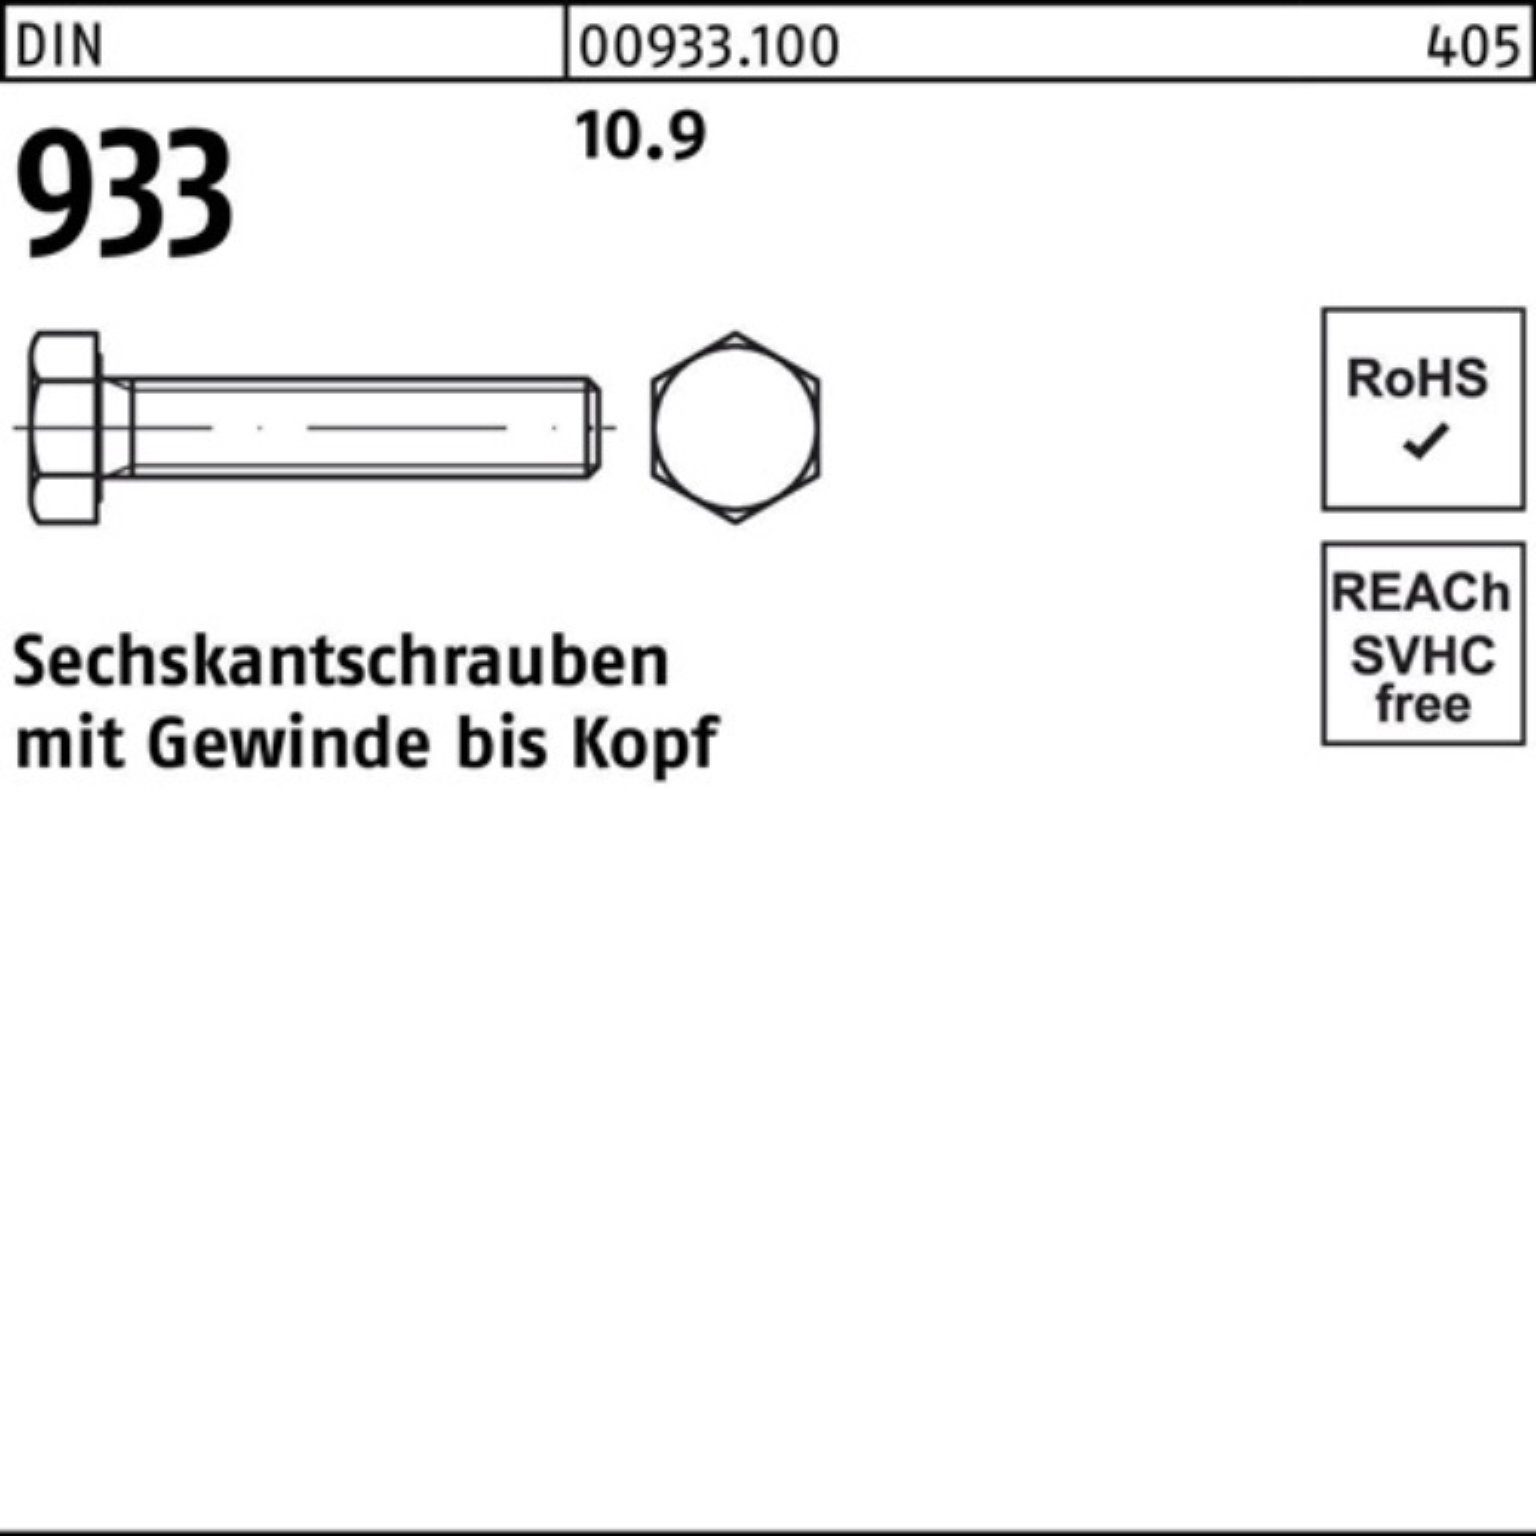 933 933 500 Pack Reyher VG 10.9 Sechskantschraube 25 DIN Sechskantschraube M5x DIN 500er Stück